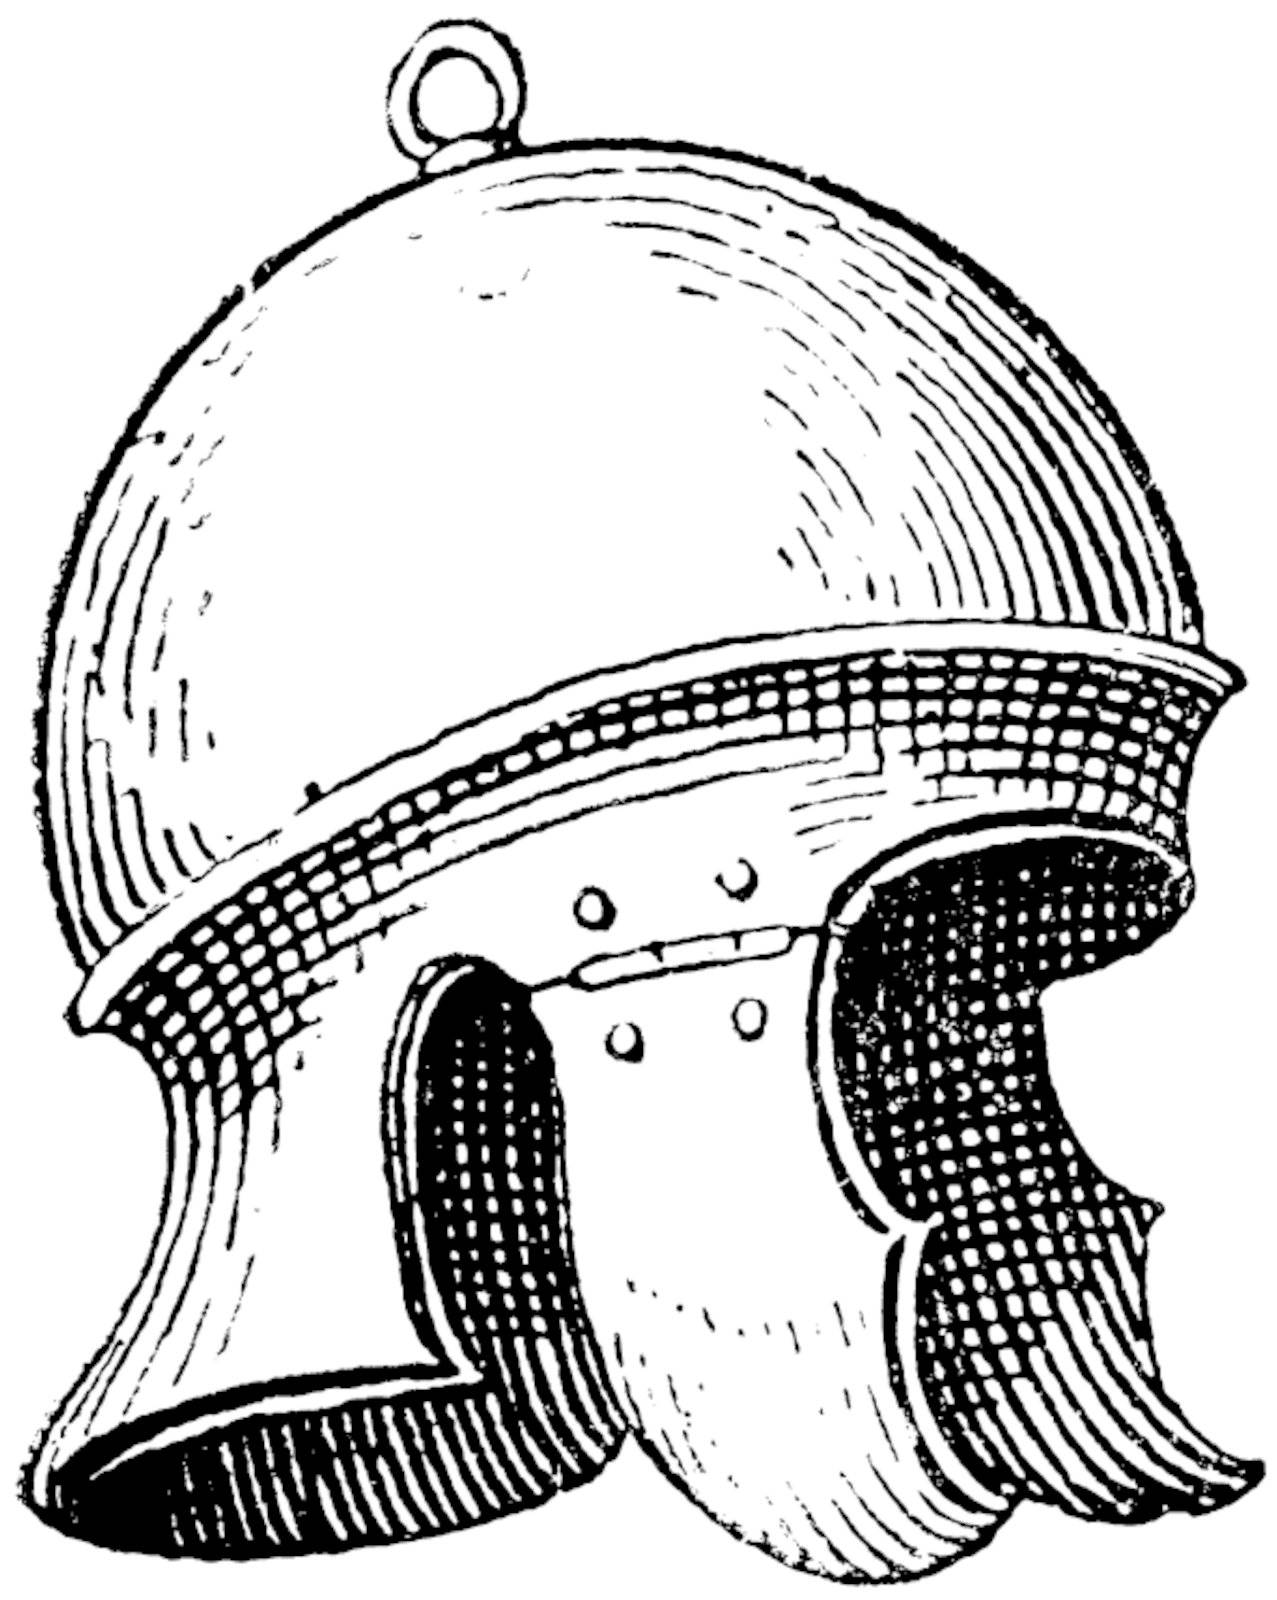 Roman legionnaire's helmet or galea vintage engraving. Old engraved illustration of legionnaire's helmet.